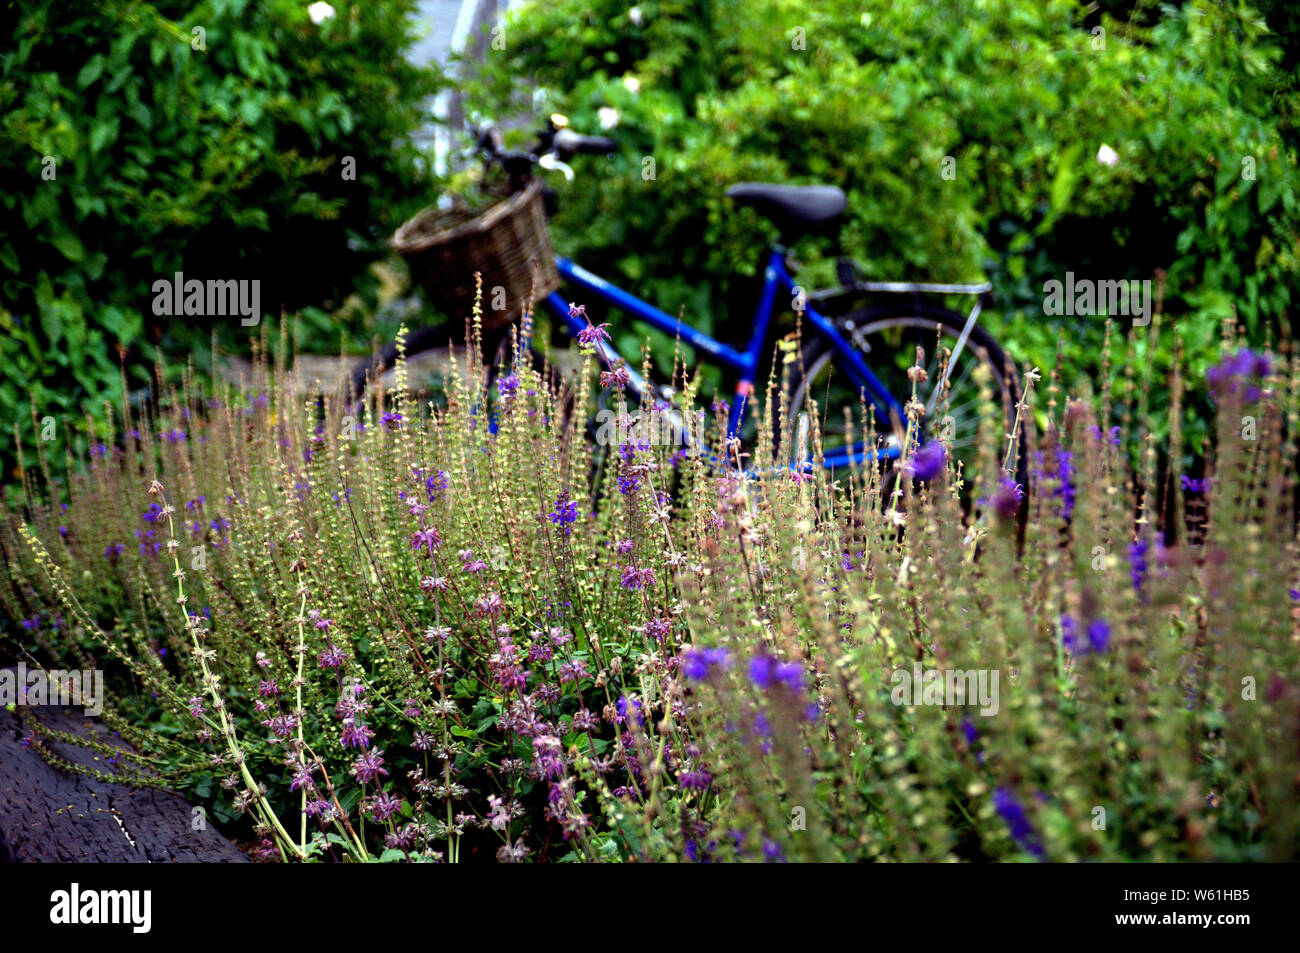 Ein Fahrrad ist vor ein Garten mit lila salvia Blumen geparkt Stockfoto